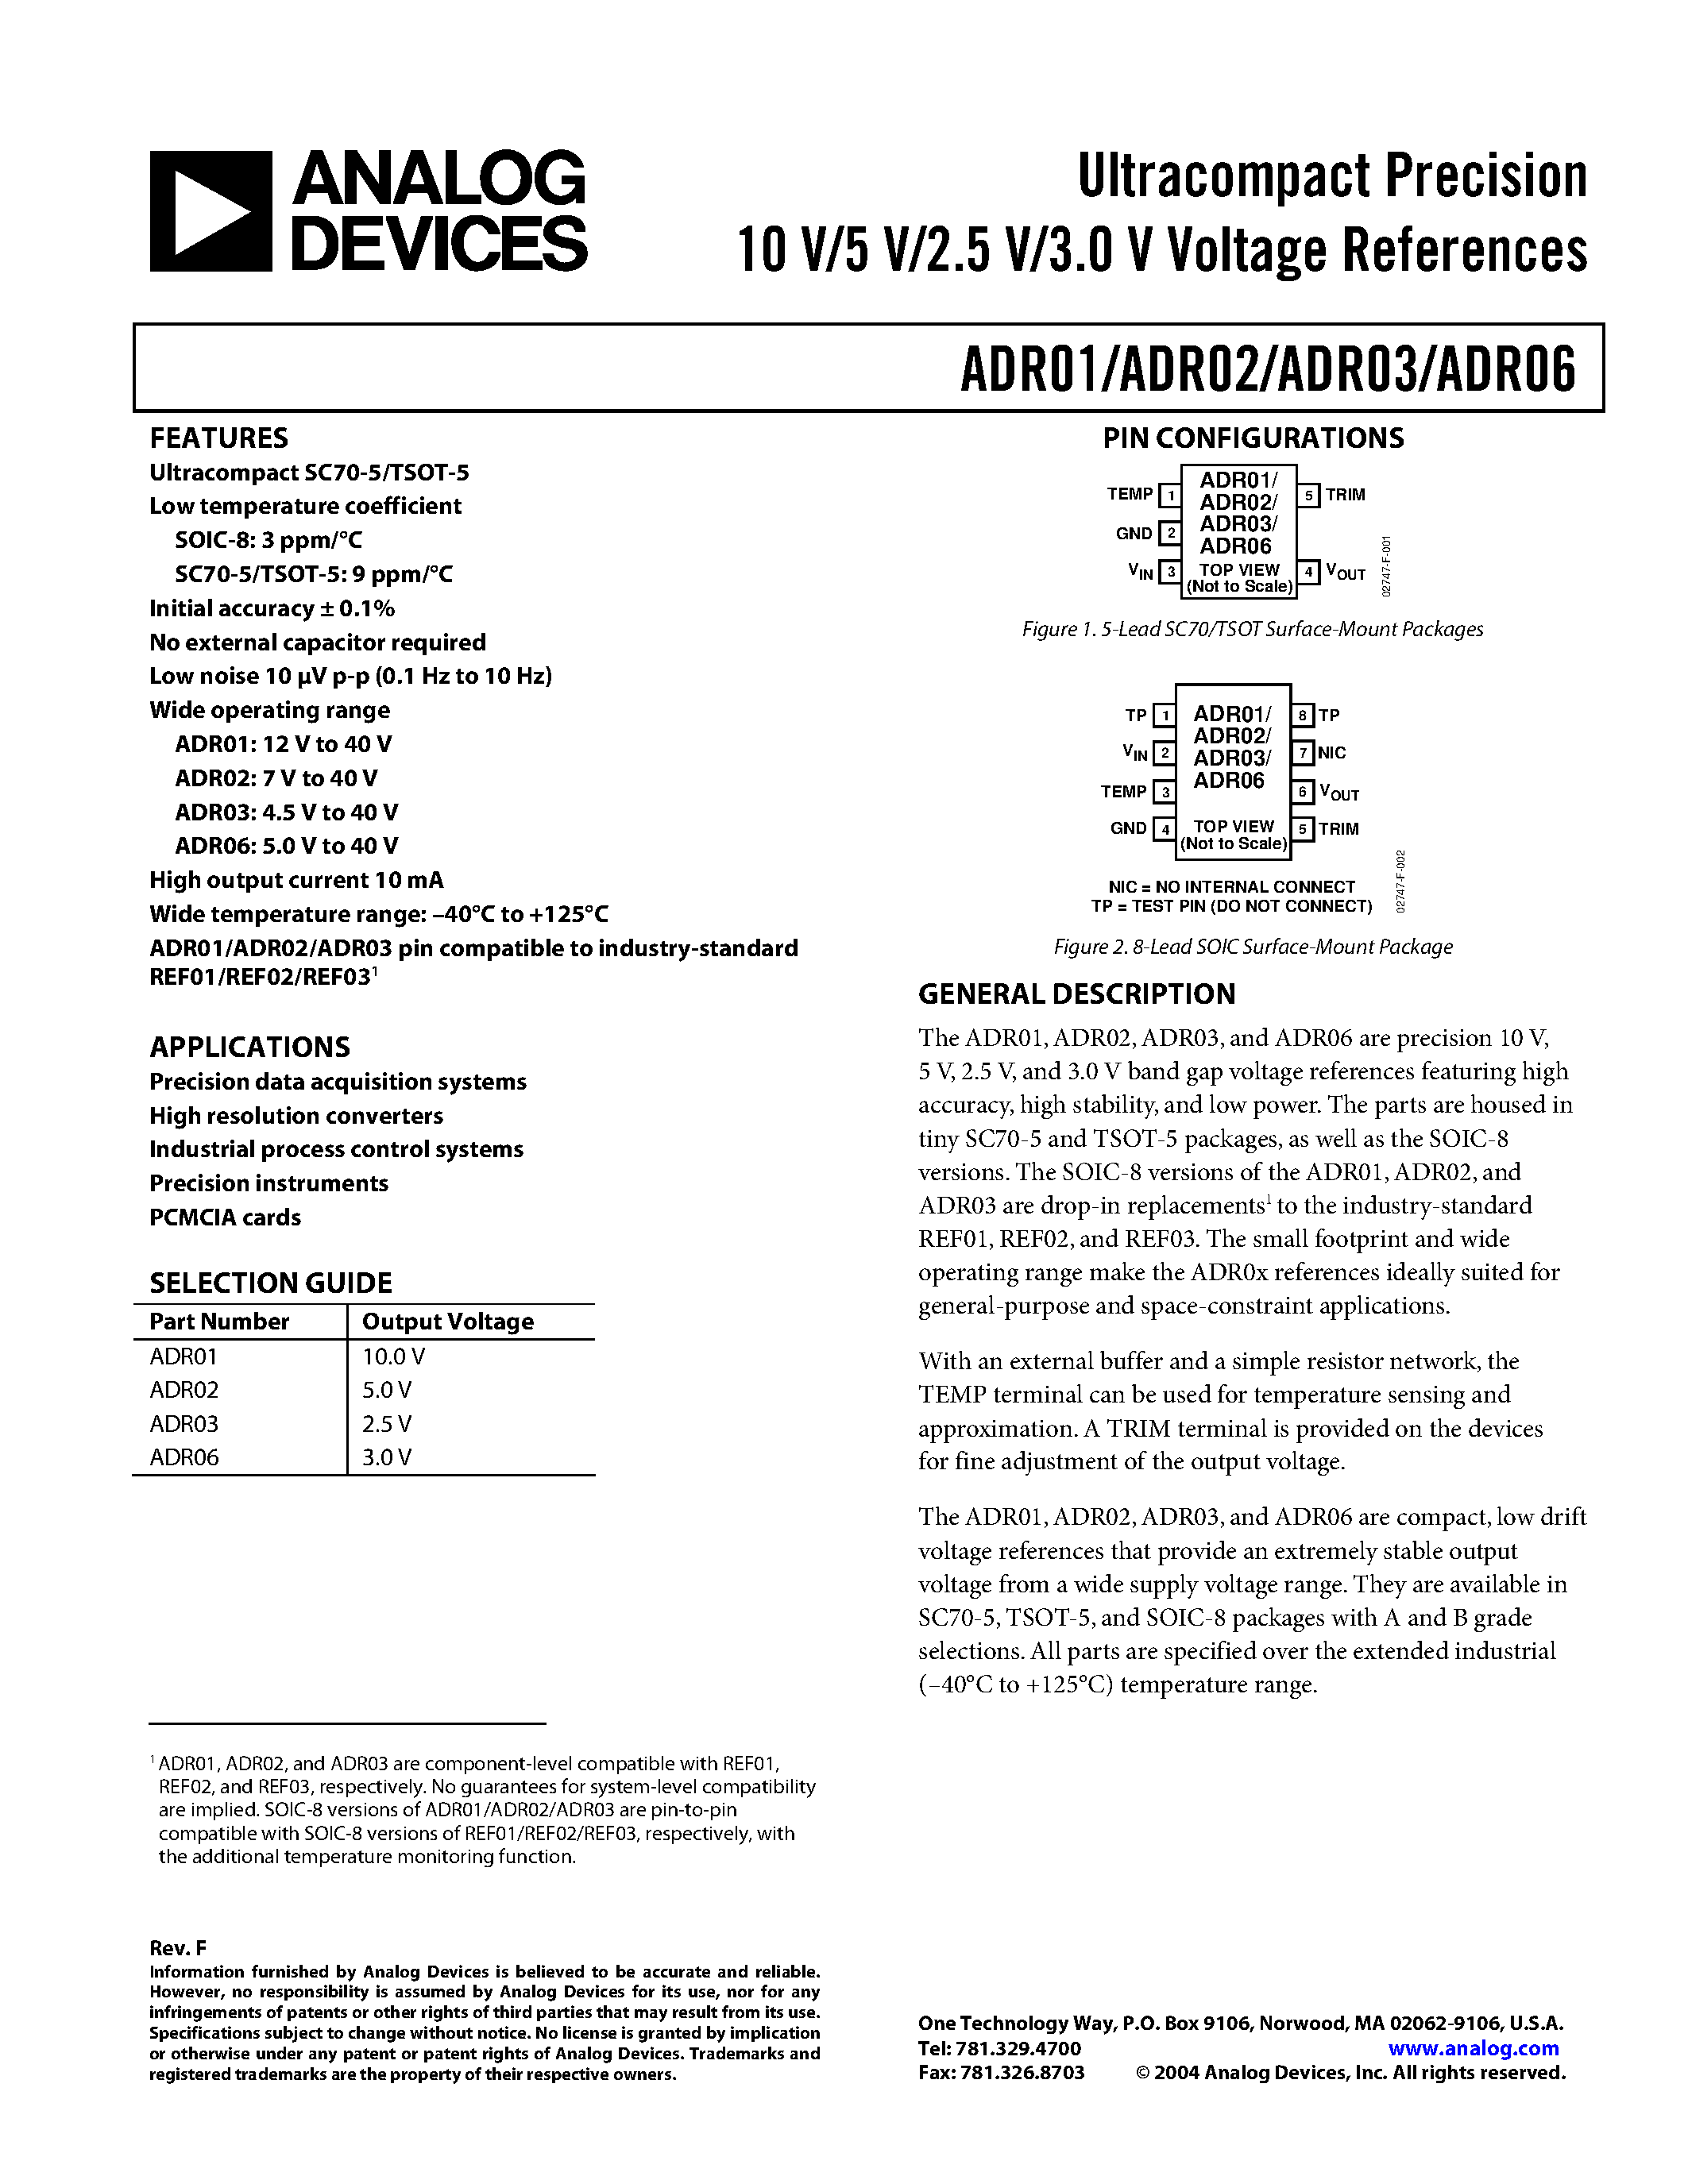 Даташит ADR02 - Ultracompact Precision10 V/5 V/2.5 V/3.0 V Voltage References страница 1